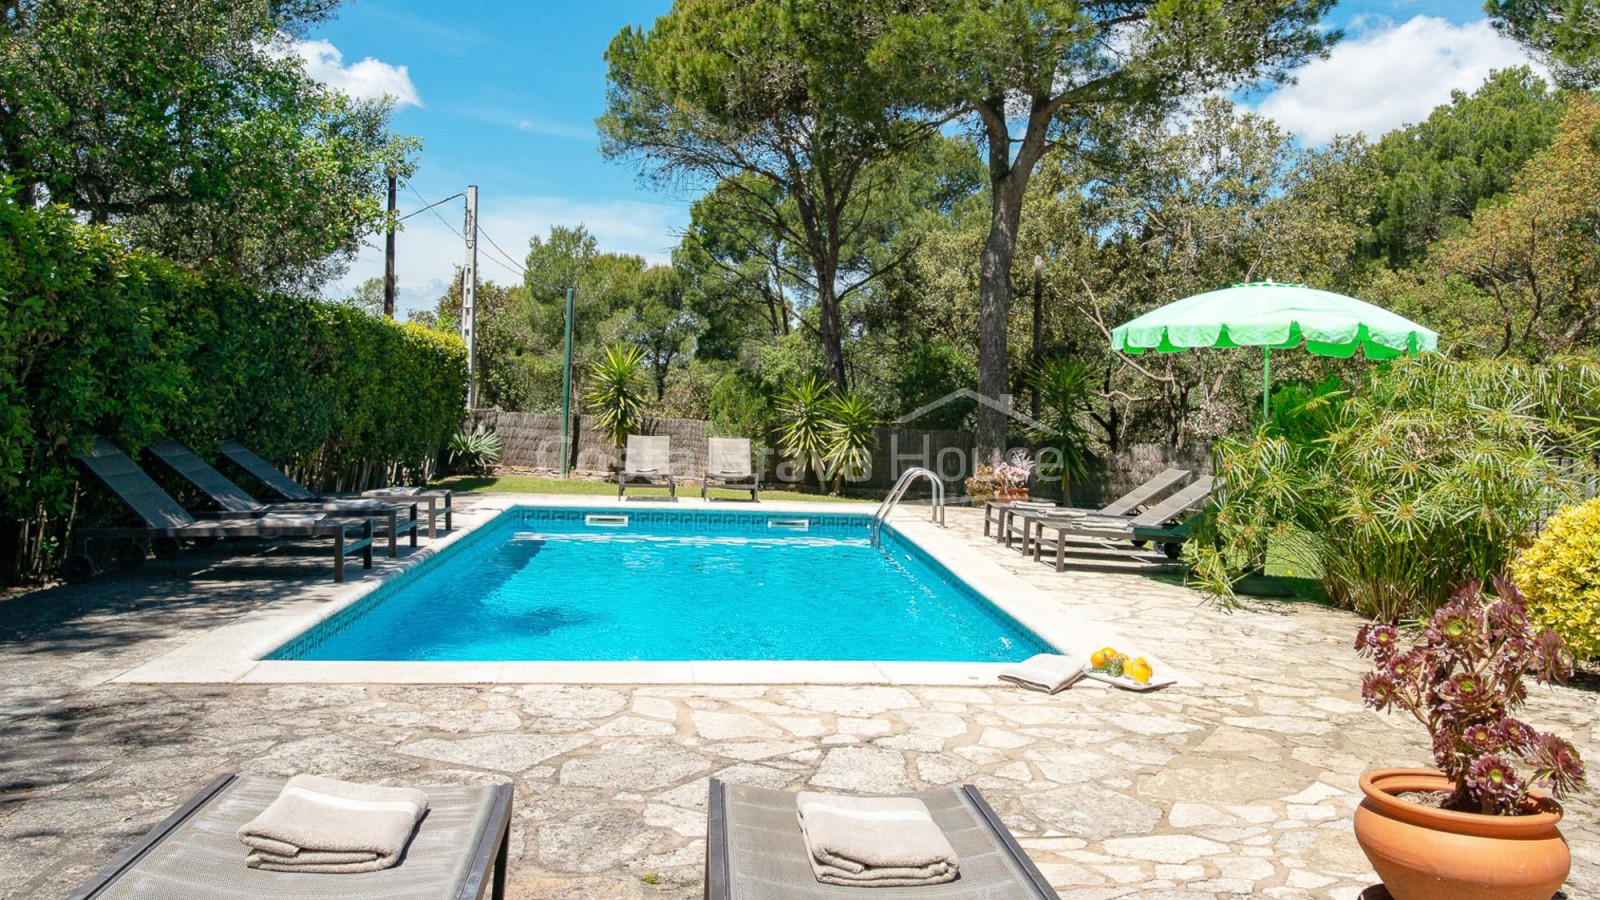 Casa amb piscina i jardí a Llafranc a 5 min amb cotxe de la platja